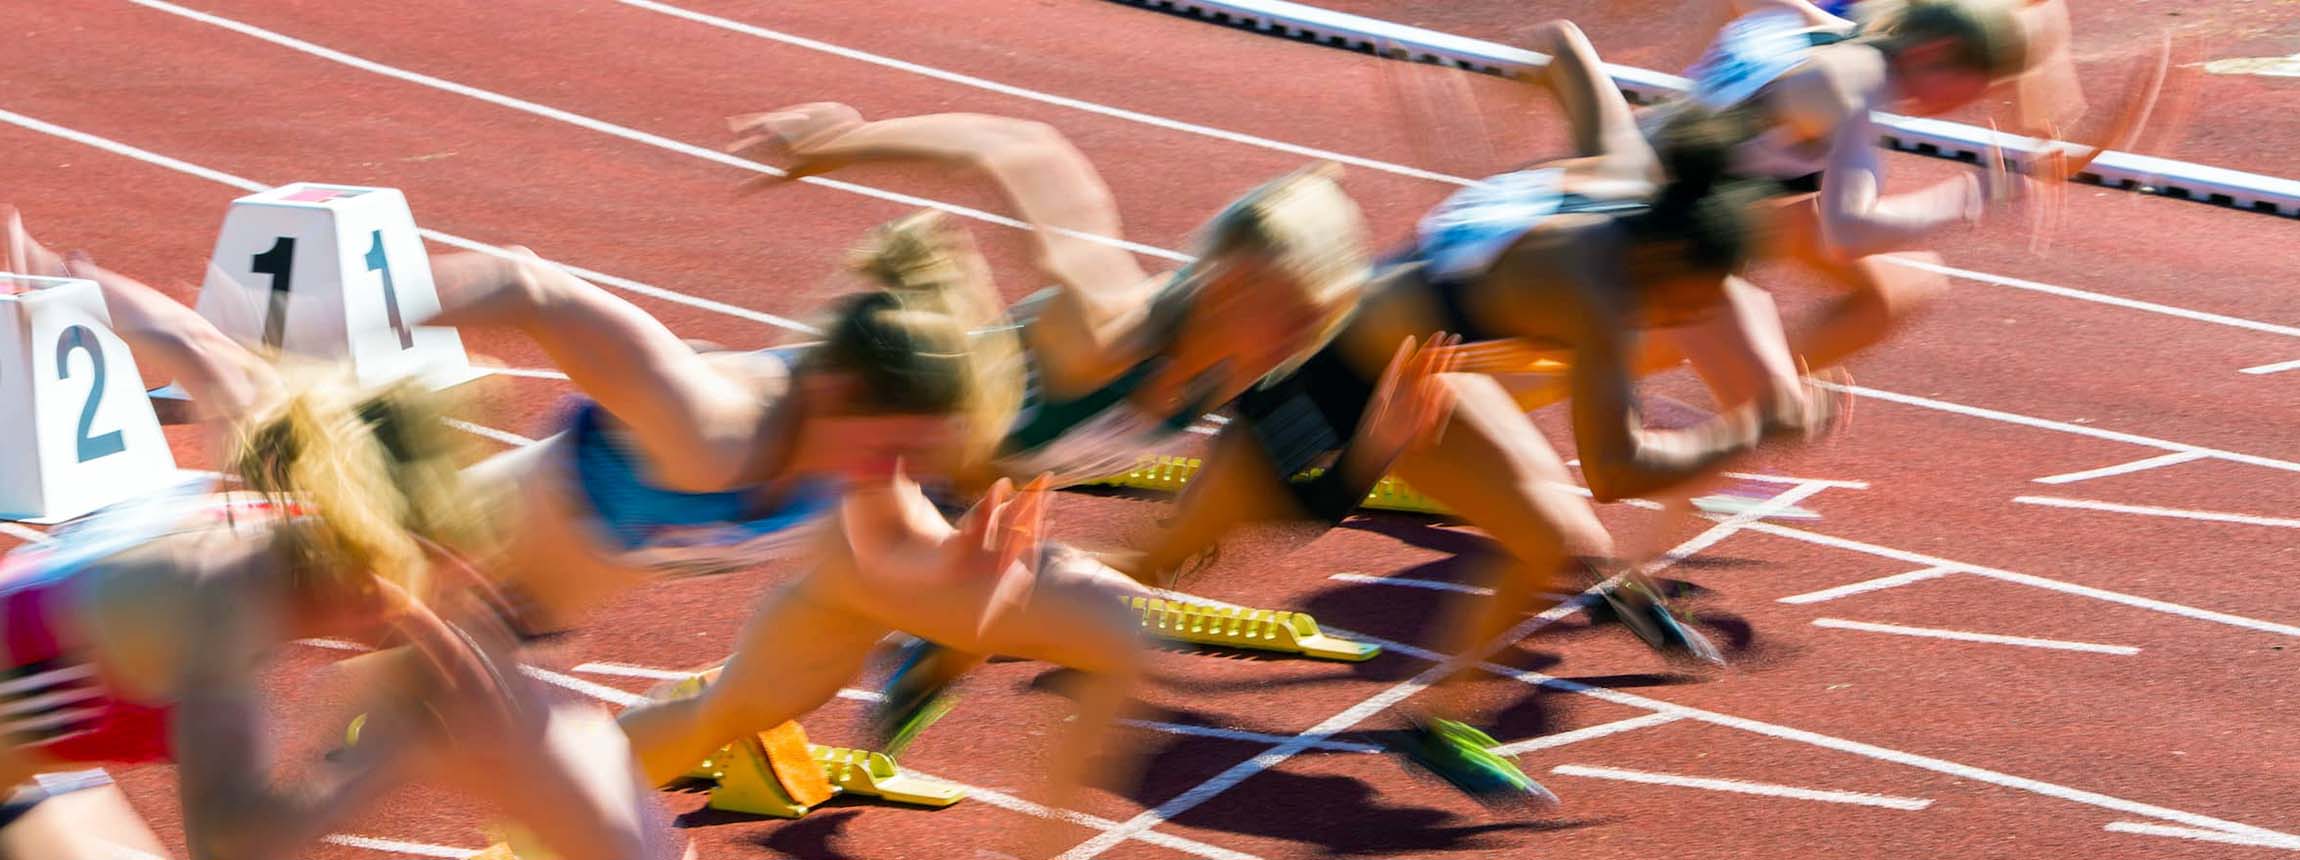 Blurred athletes on track start